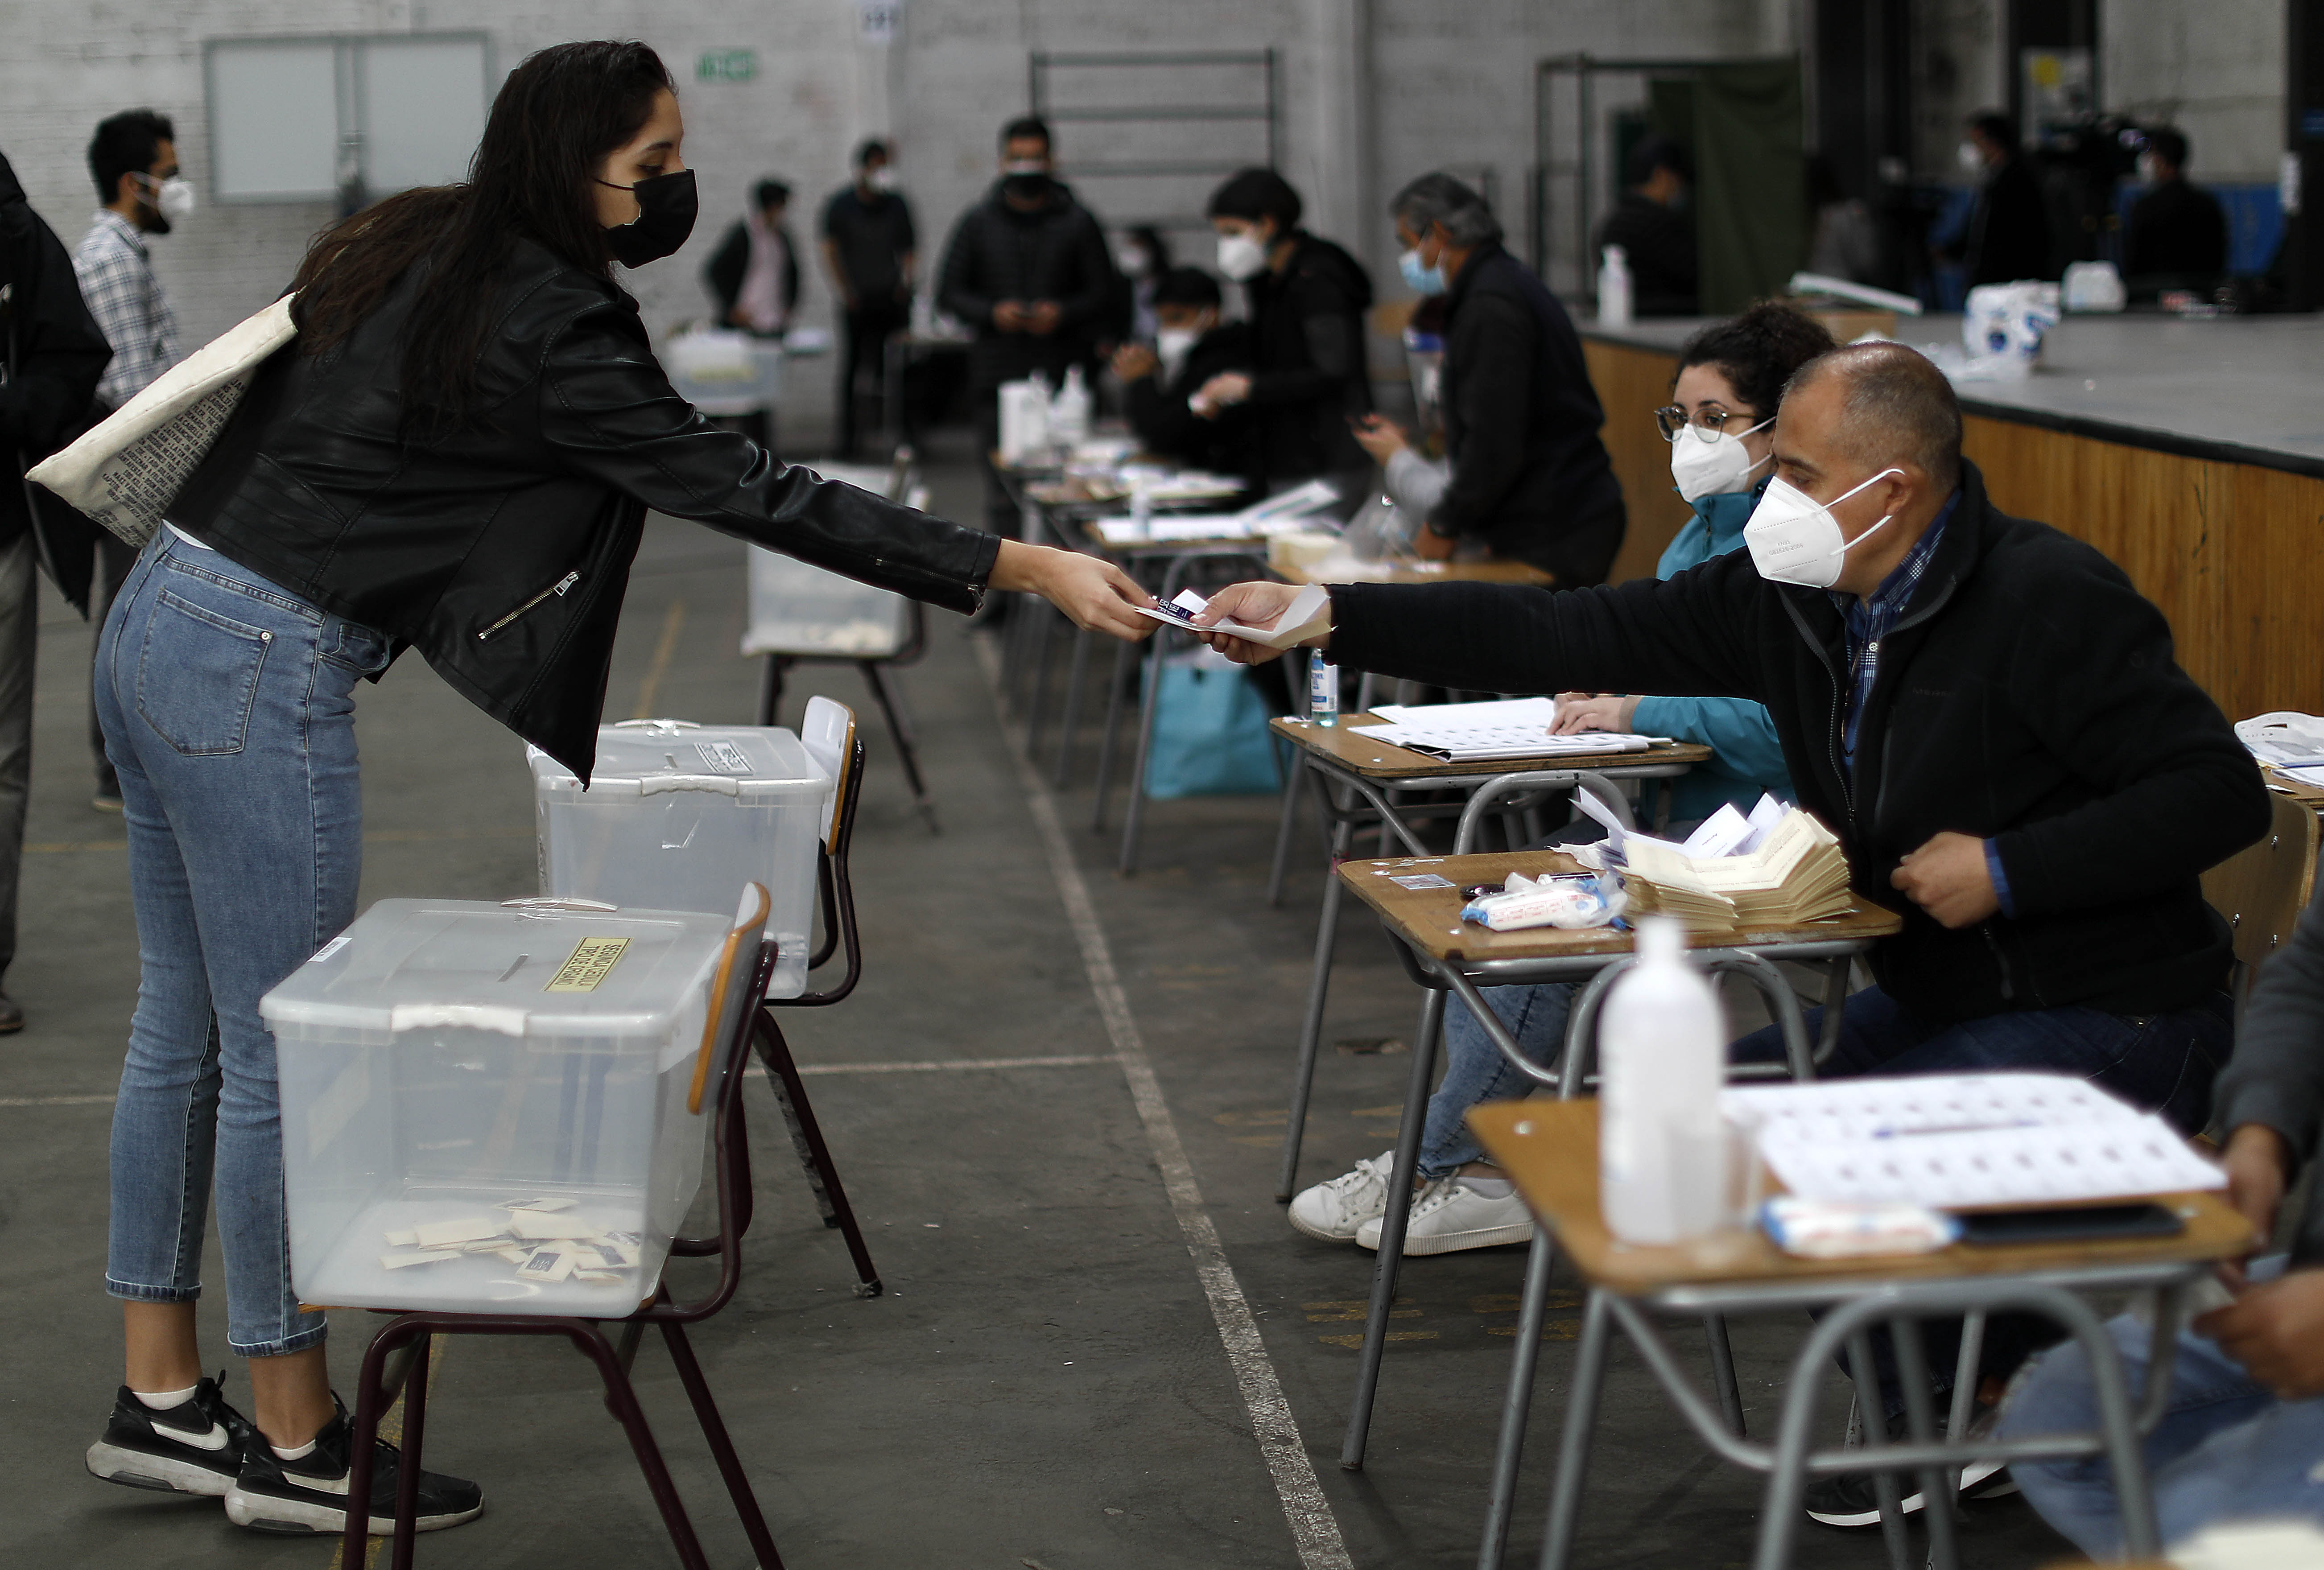 En octubre del 2020 y en plena pandemia, se llevaron de forma segura y con alta participación las elecciones del Plebiscito. Claro que hoy en Chile el aumento de casos diarios casi triplica los números de ese entonces. (Foto: Agencia UNO)